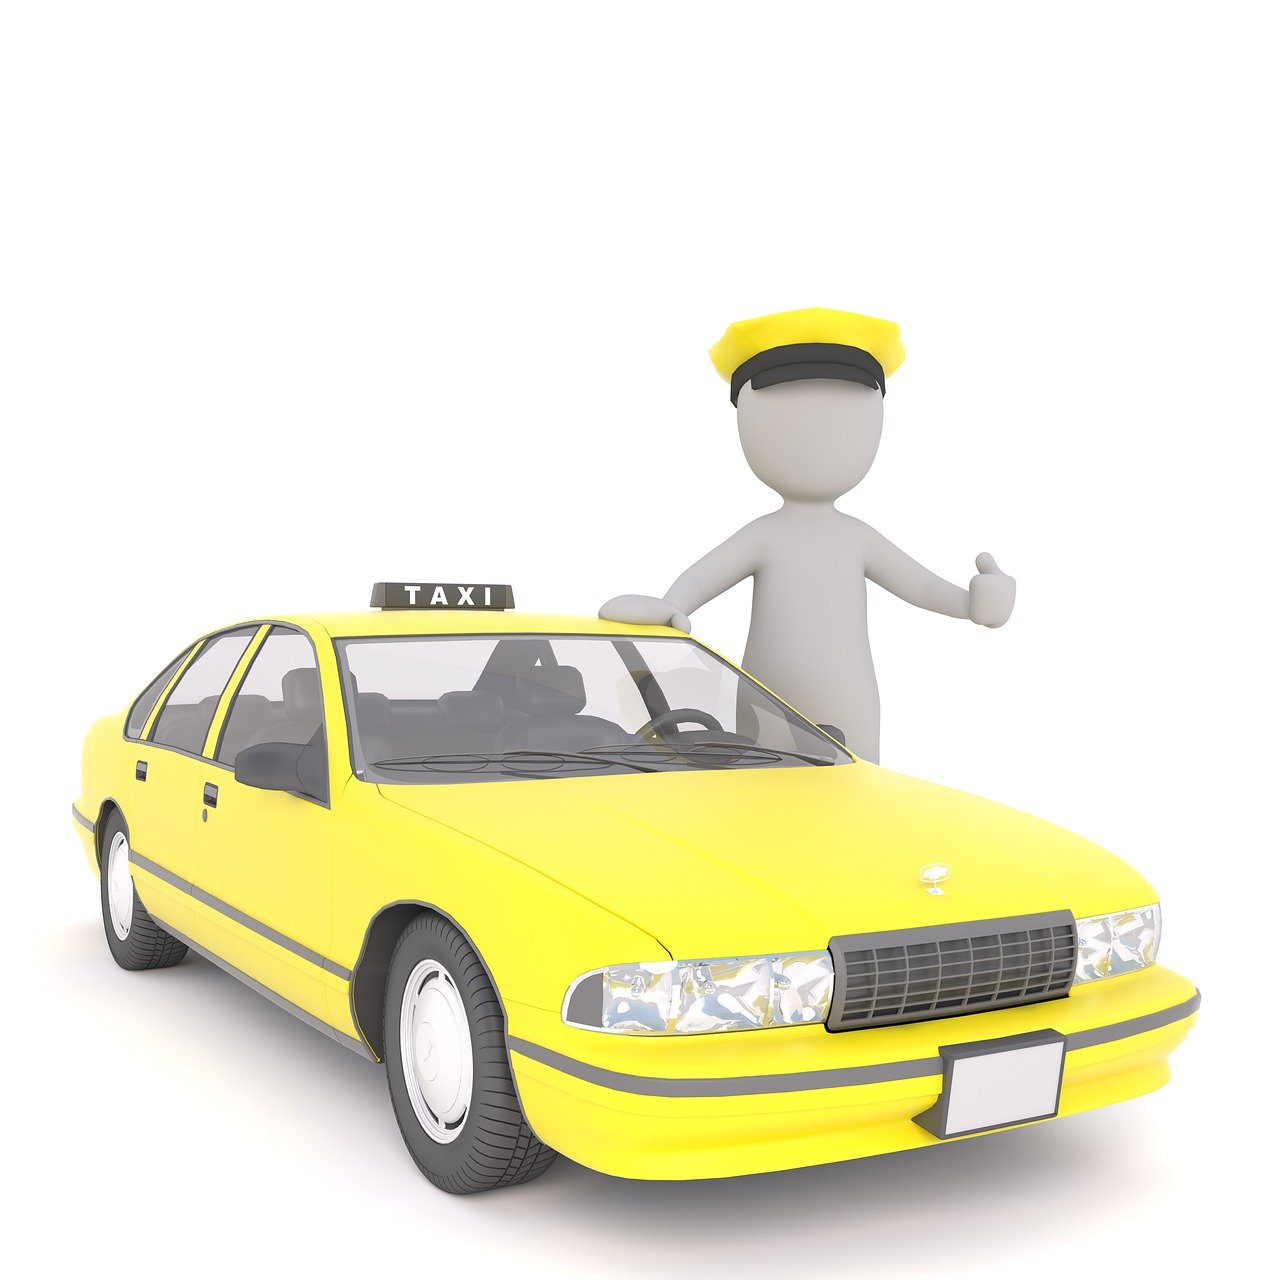 Quanto tempo dura um curso de taxista?